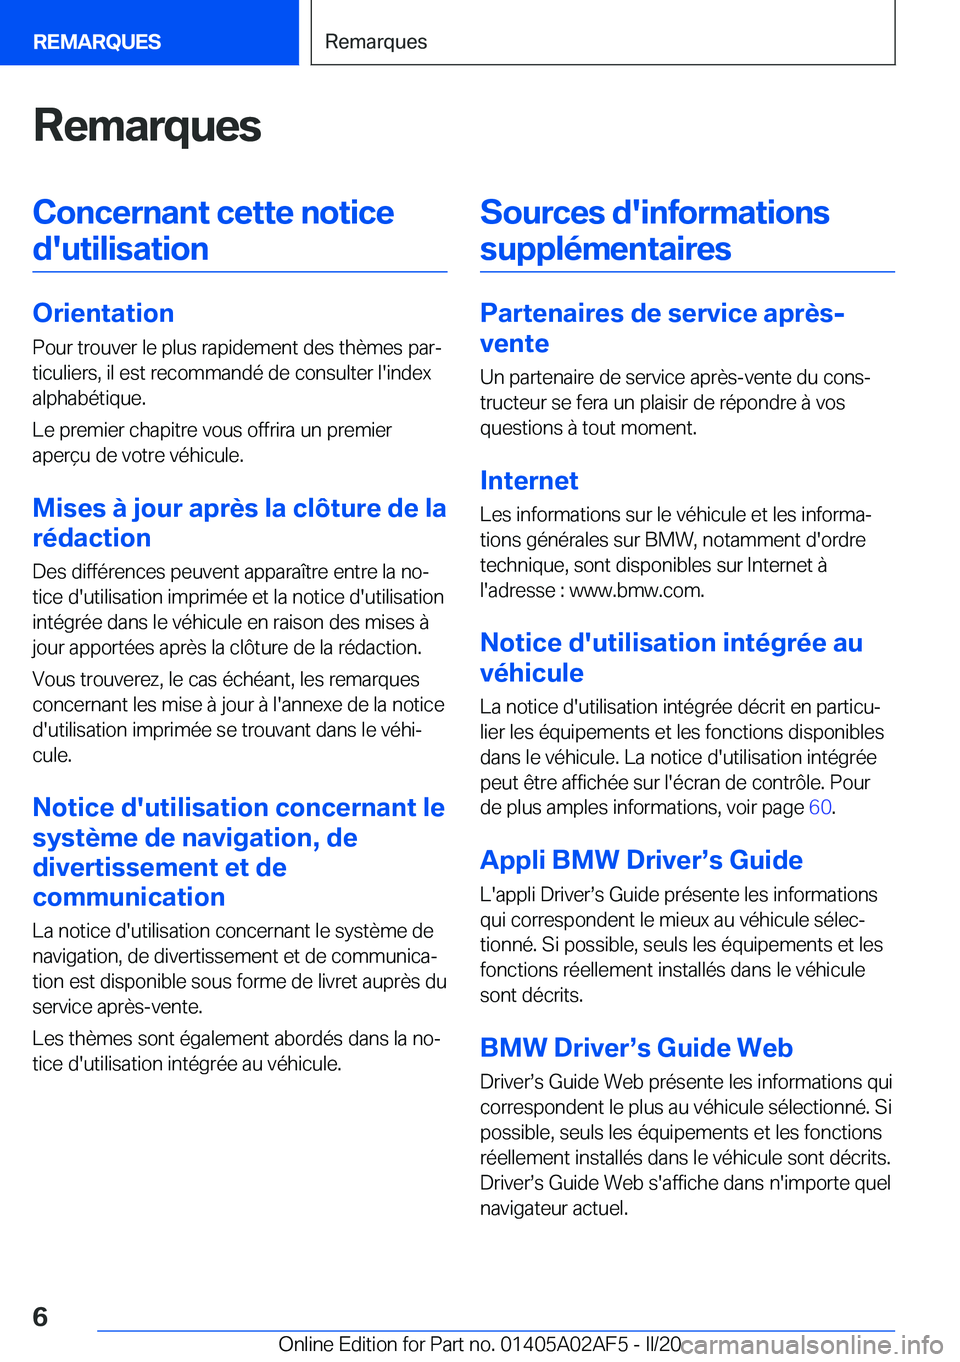 BMW X1 2020  Notices Demploi (in French) �R�e�m�a�r�q�u�e�s�C�o�n�c�e�r�n�a�n�t��c�e�t�t�e��n�o�t�i�c�e�d�'�u�t�i�l�i�s�a�t�i�o�n
�O�r�i�e�n�t�a�t�i�o�n �P�o�u�r��t�r�o�u�v�e�r��l�e��p�l�u�s��r�a�p�i�d�e�m�e�n�t��d�e�s��t�h�è�m�